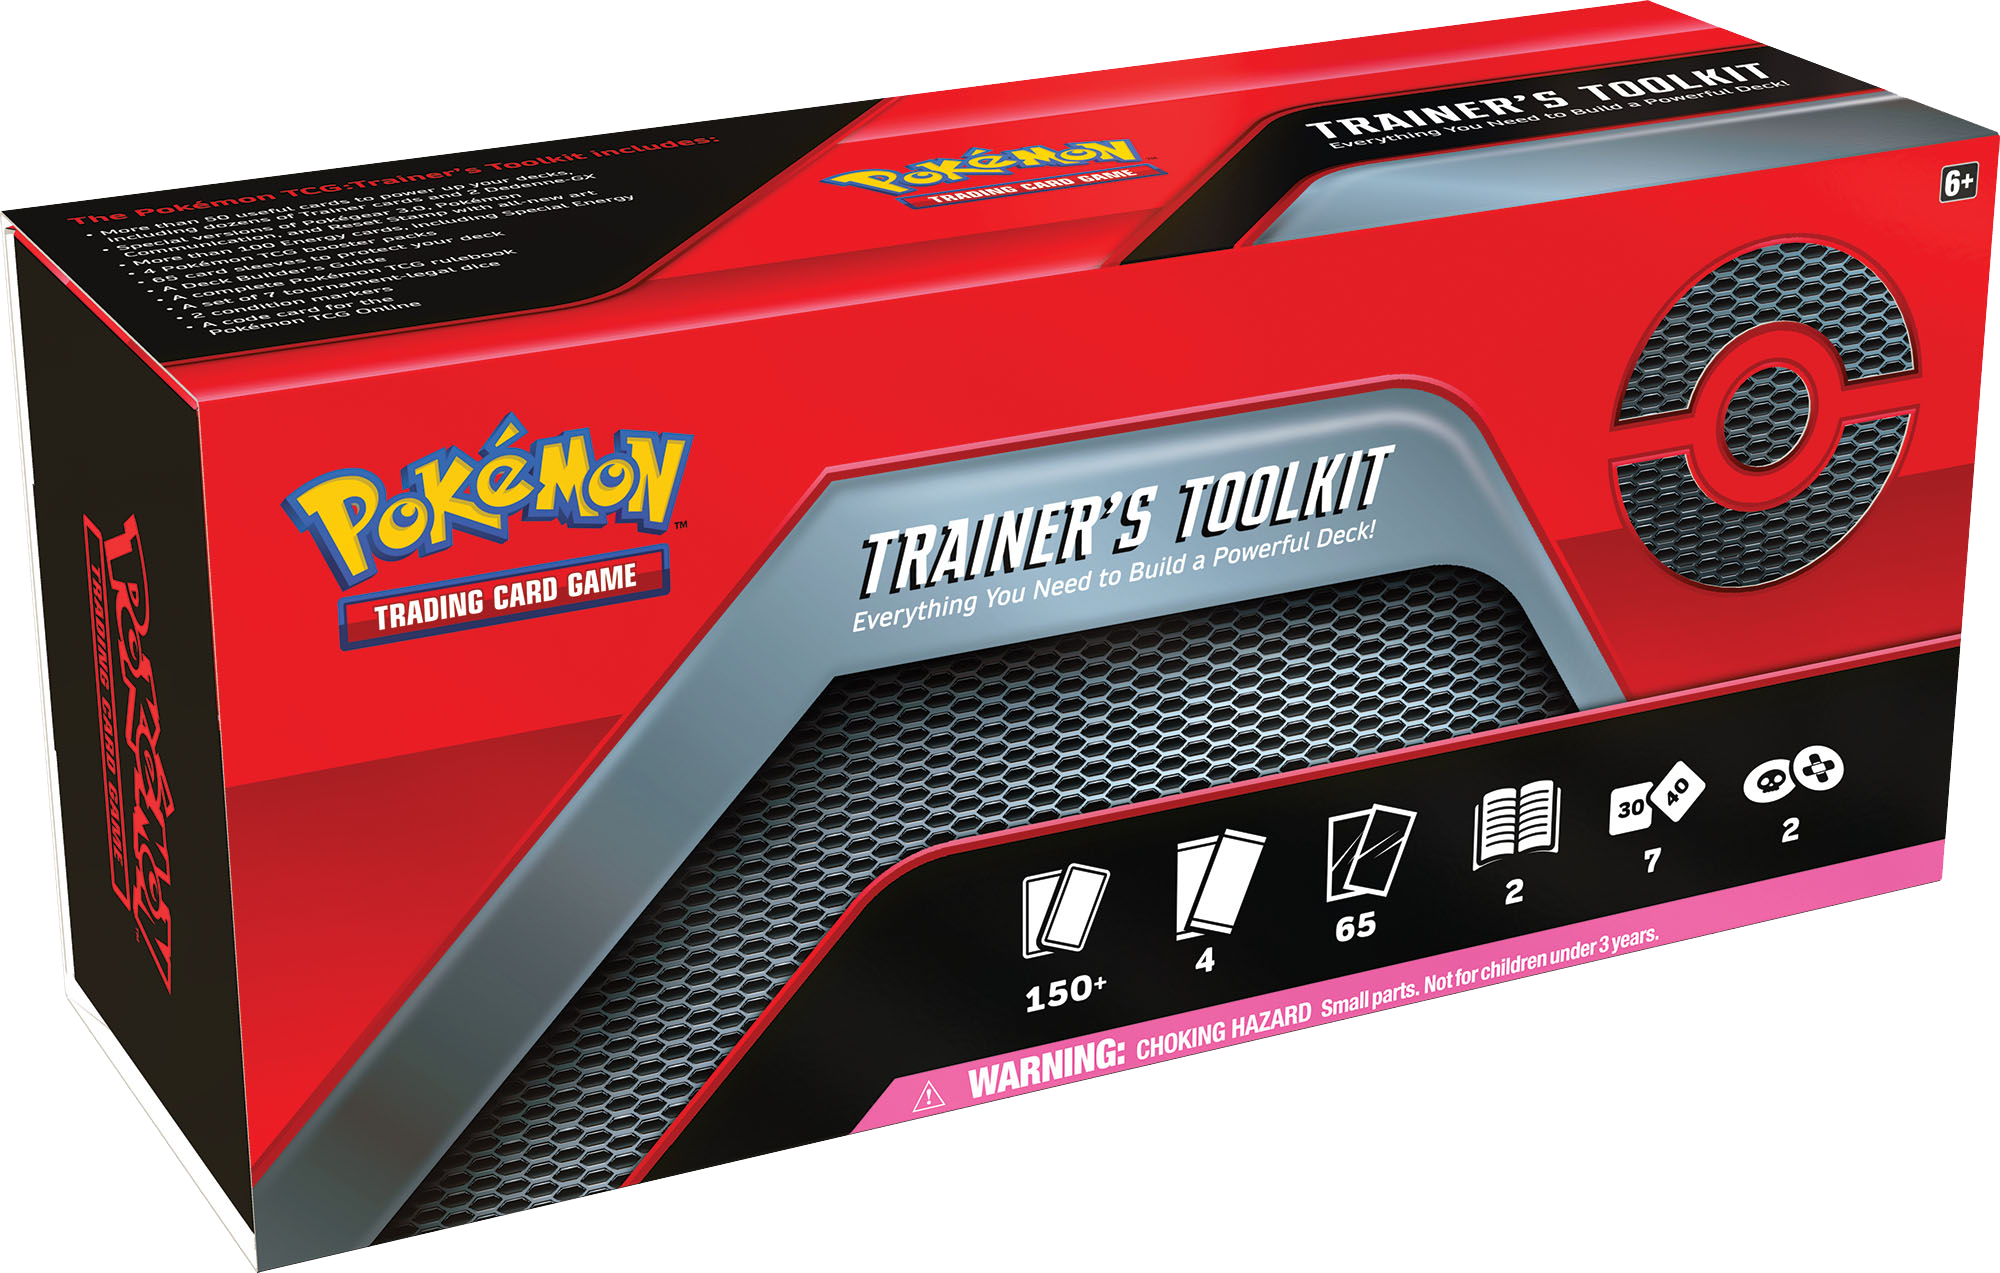 Pokémon TCG Trainer's Toolkit Game Academia Singapore